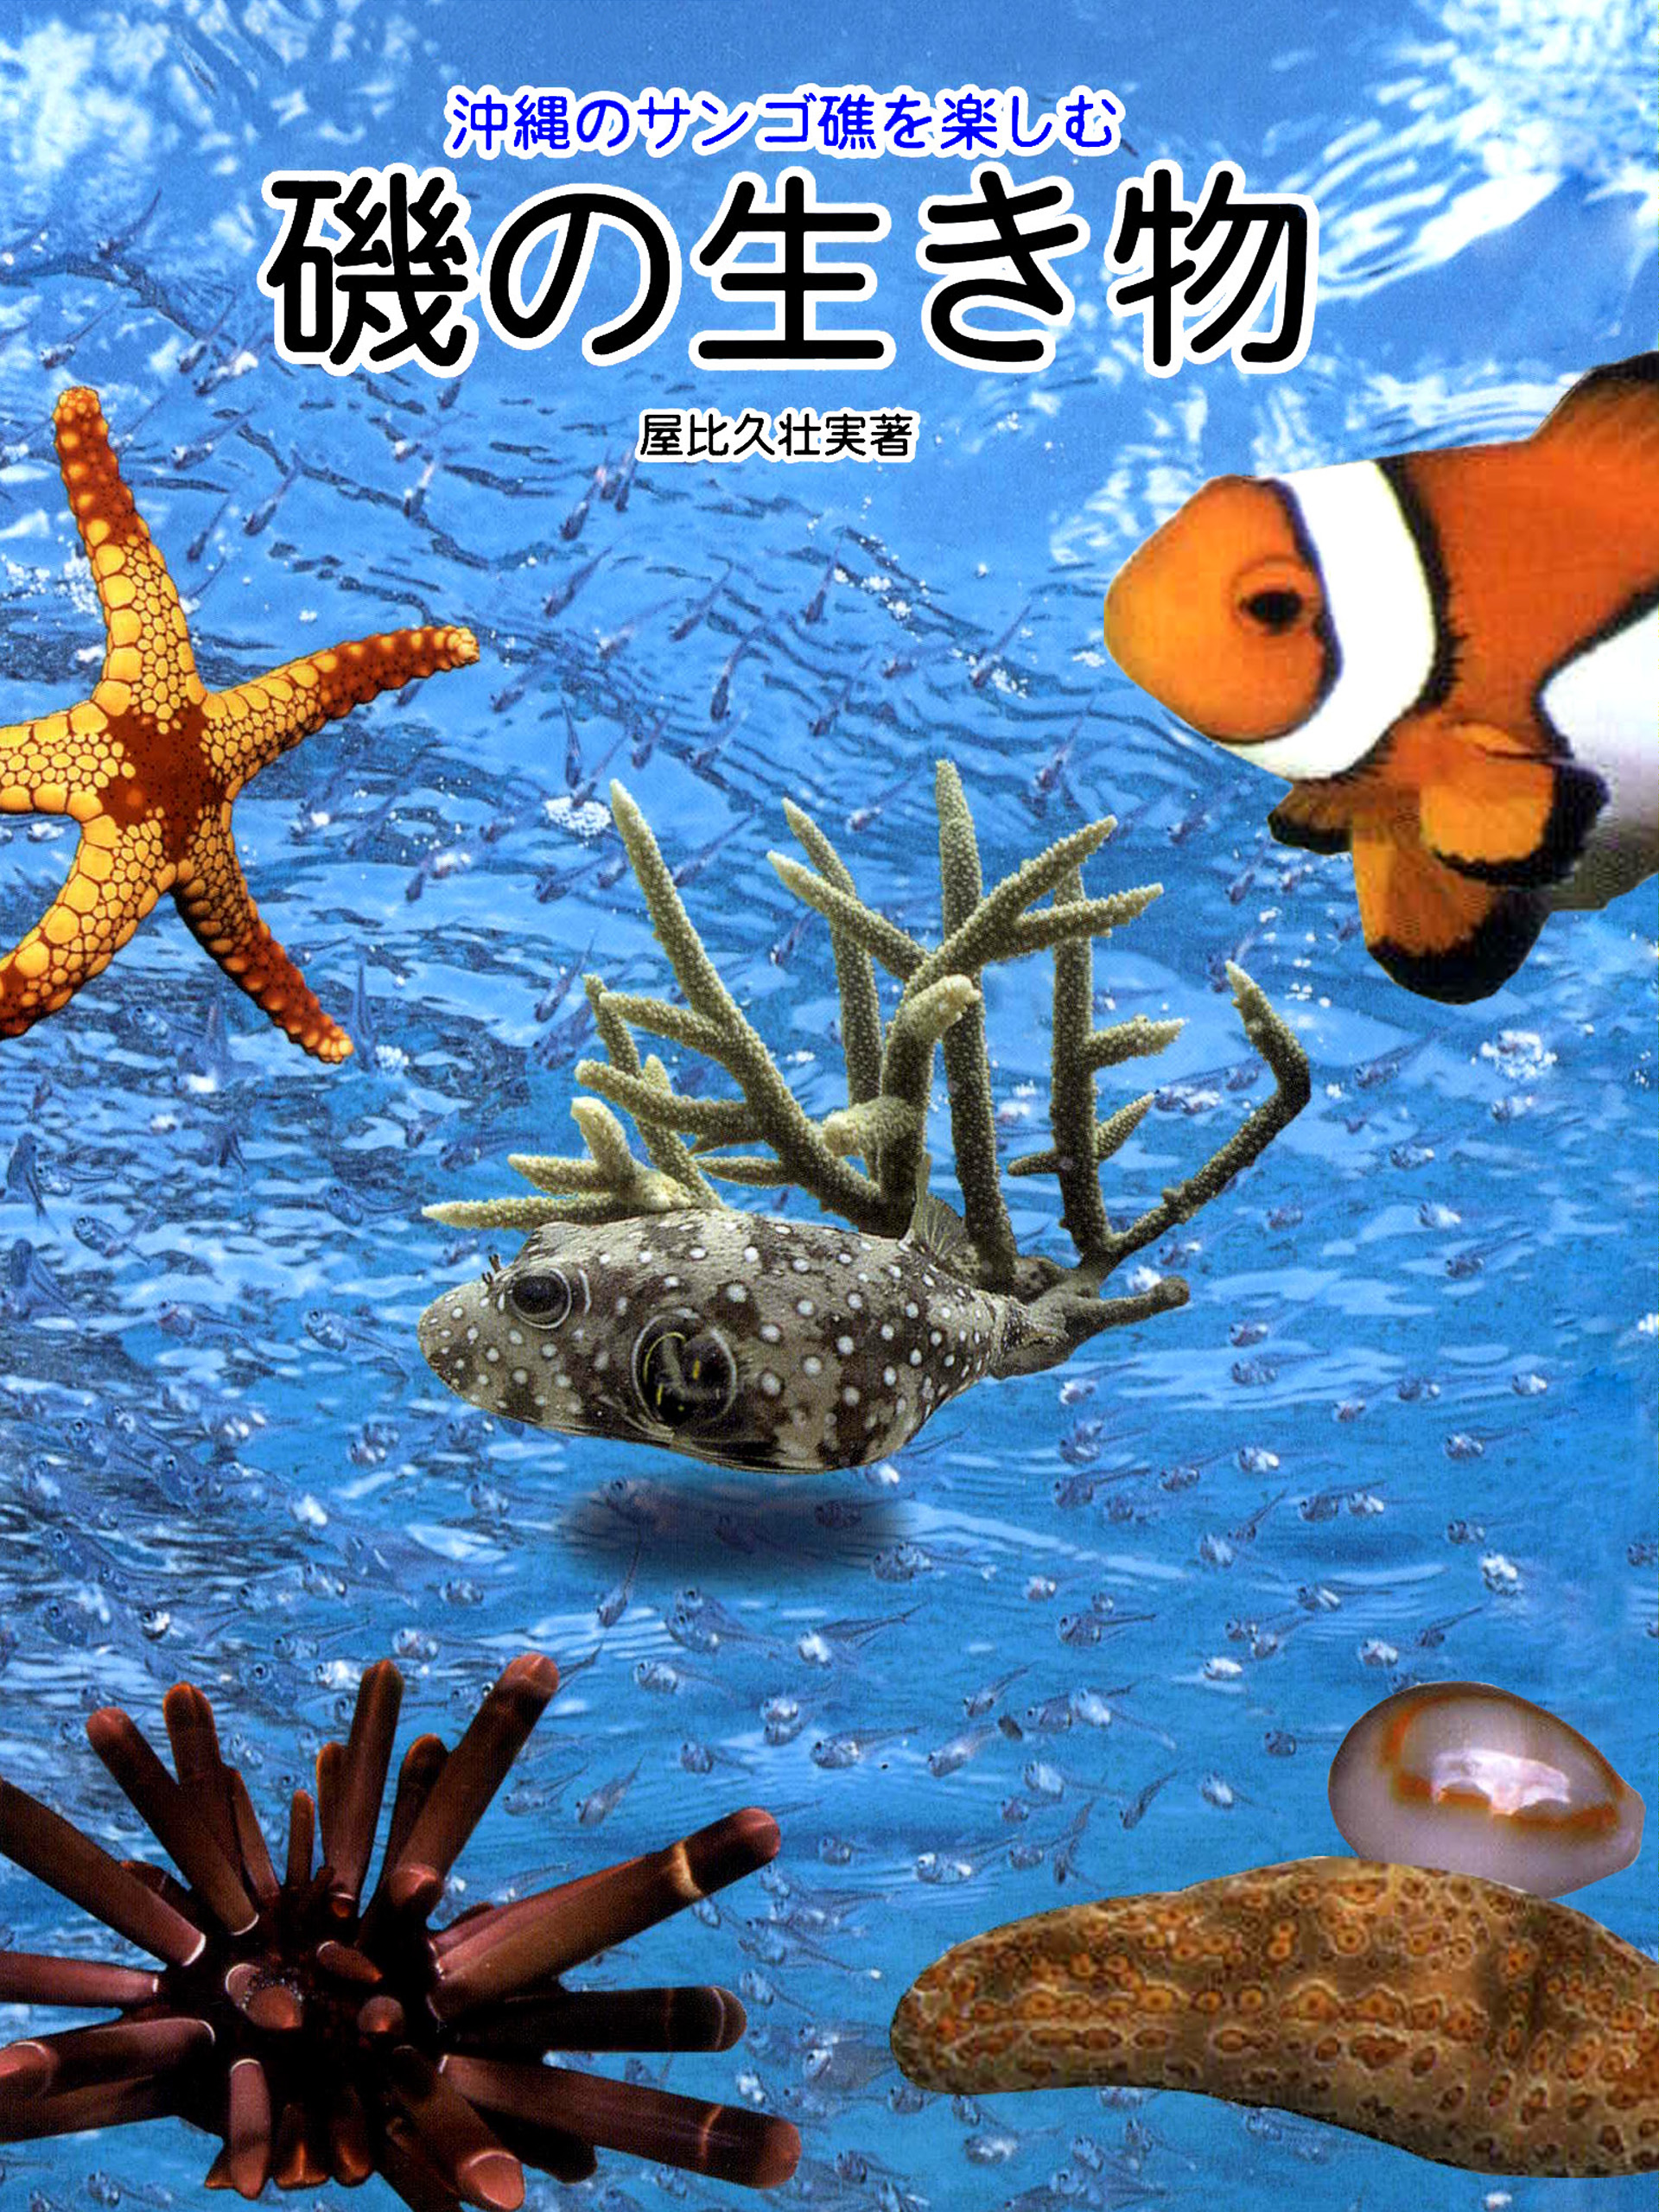 沖縄のサンゴ礁を楽しむ磯の生き物